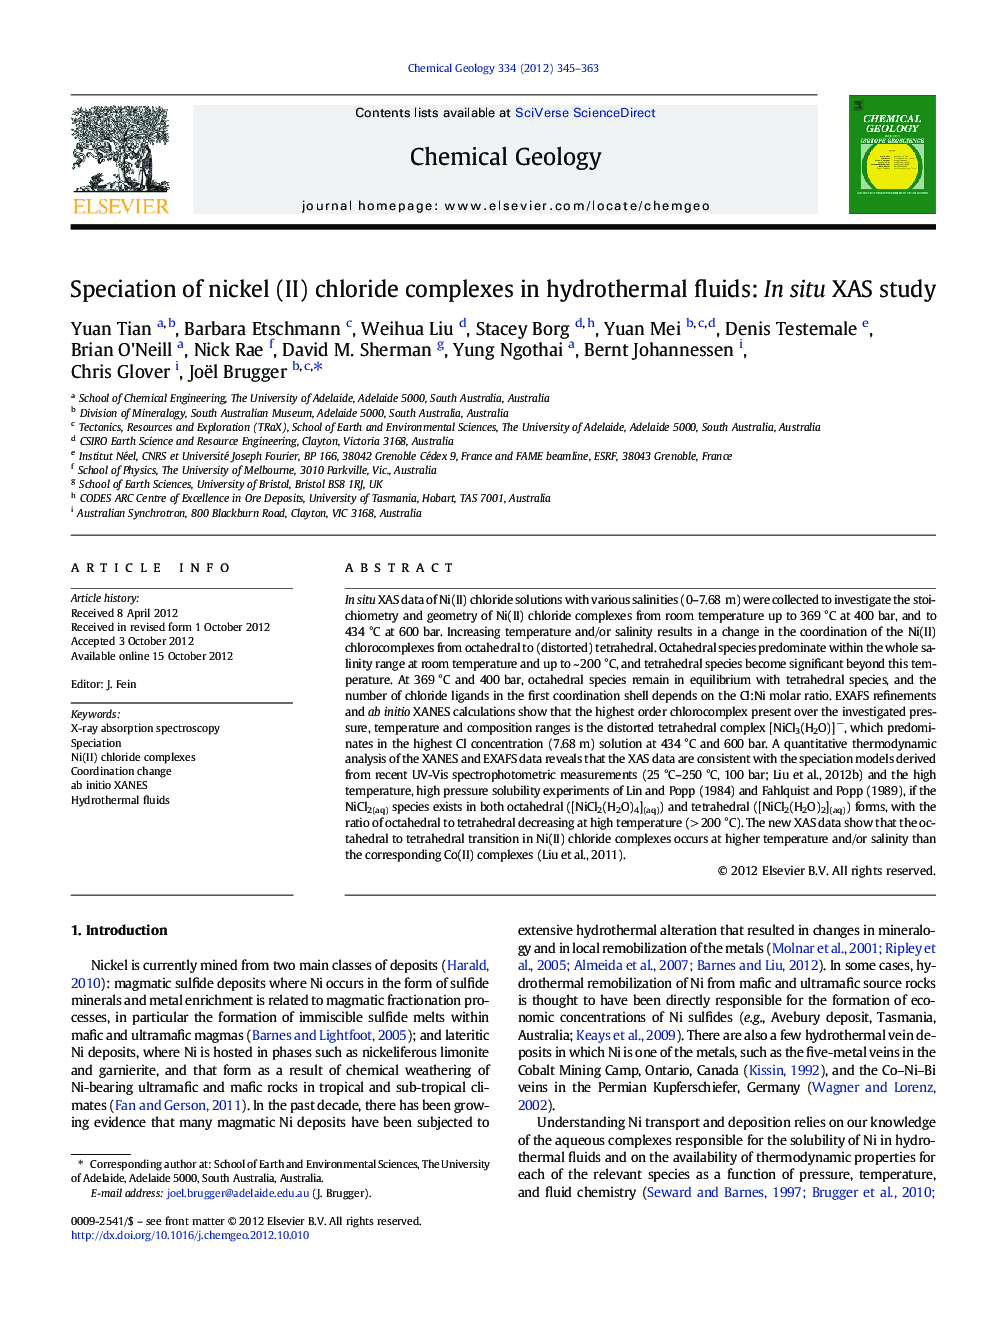 Speciation of nickel (II) chloride complexes in hydrothermal fluids: In situ XAS study